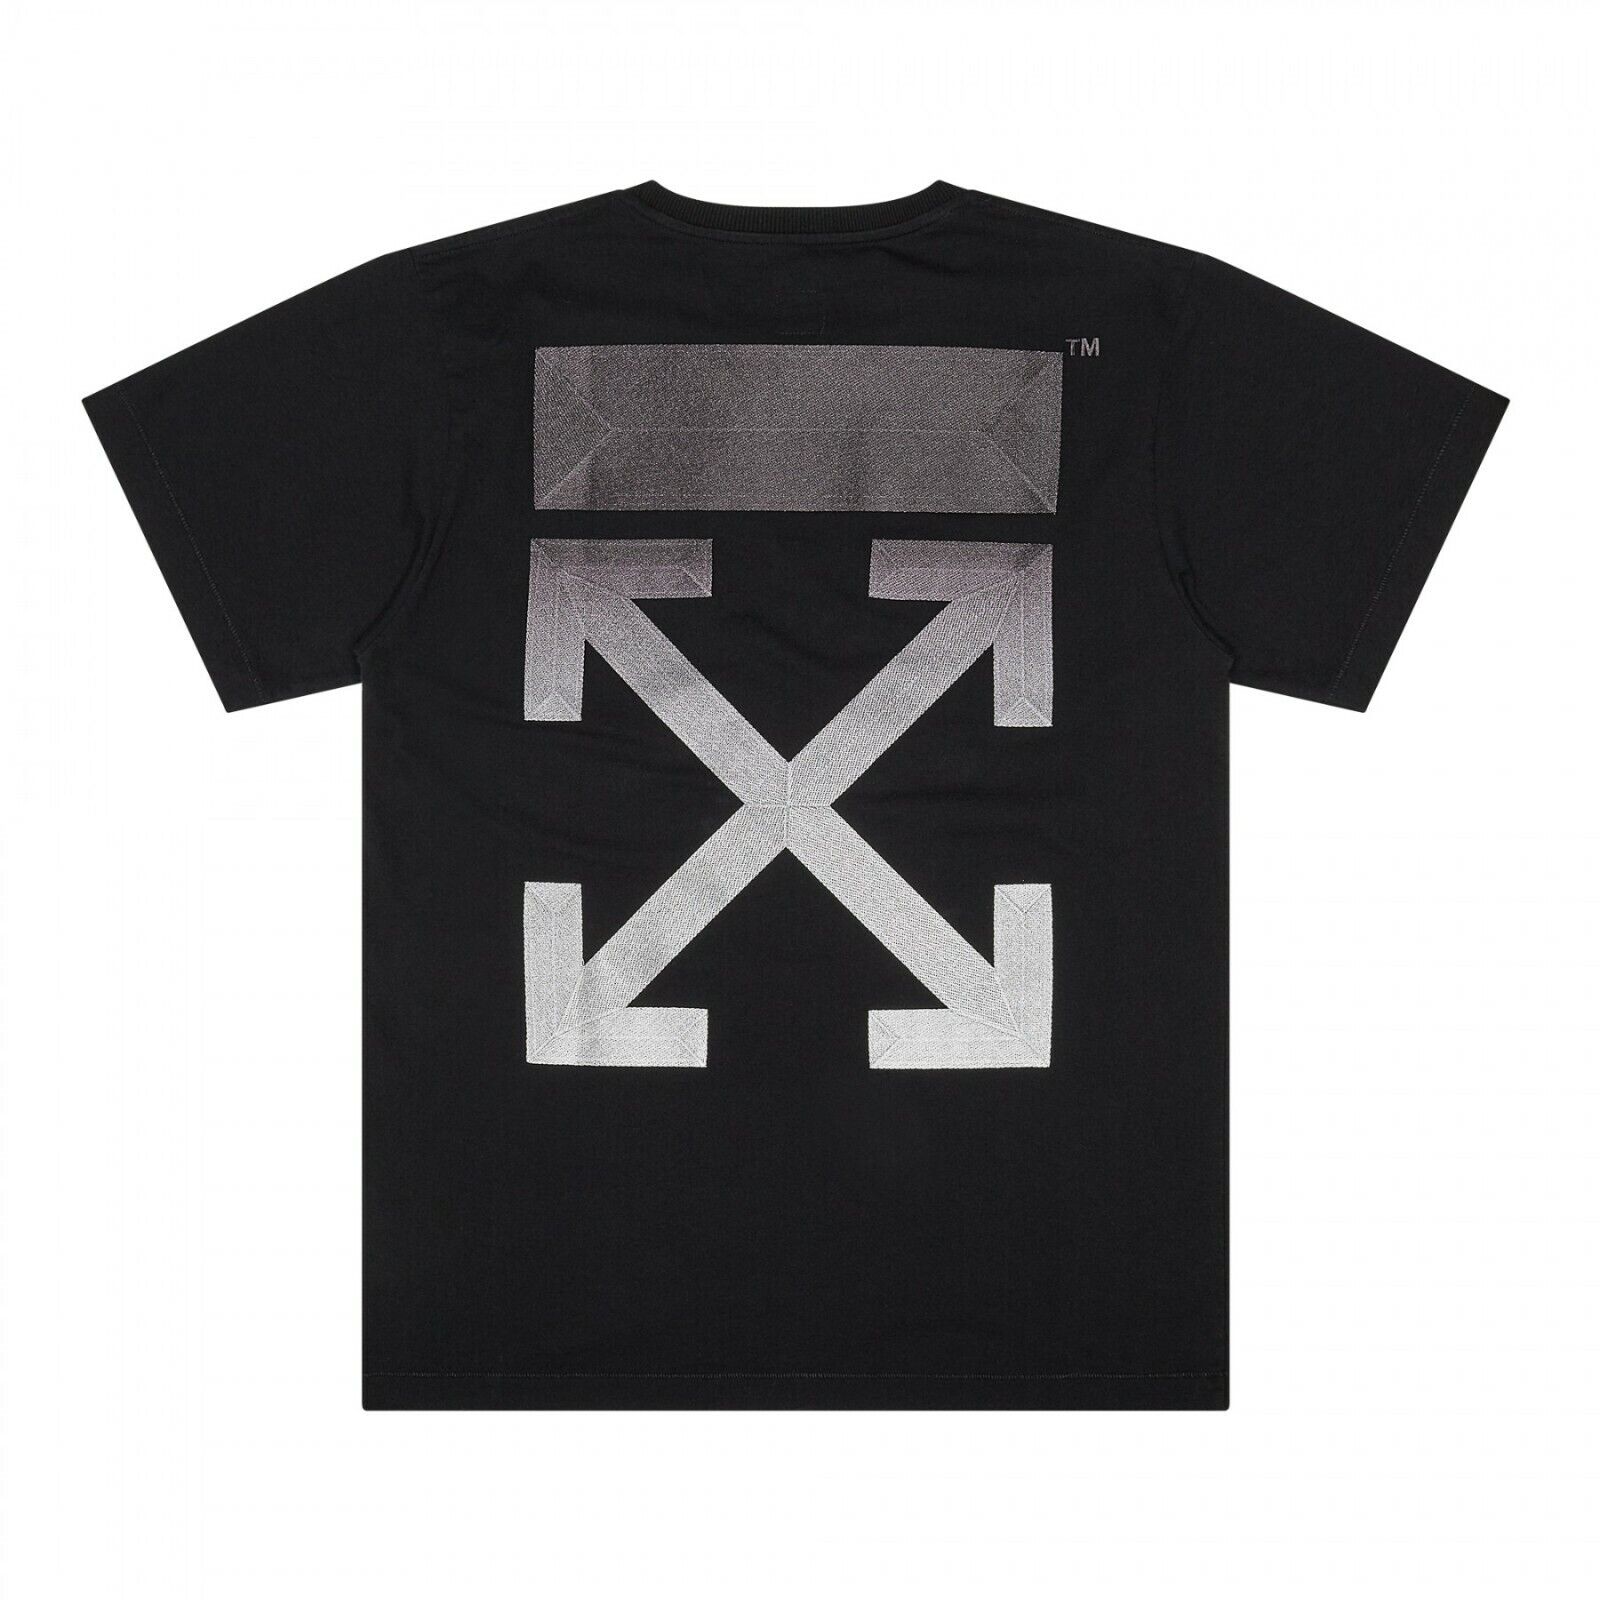 Off-White × Dover Street Market DSM Gradient Black T-Shirt XS BELOW RETAIL